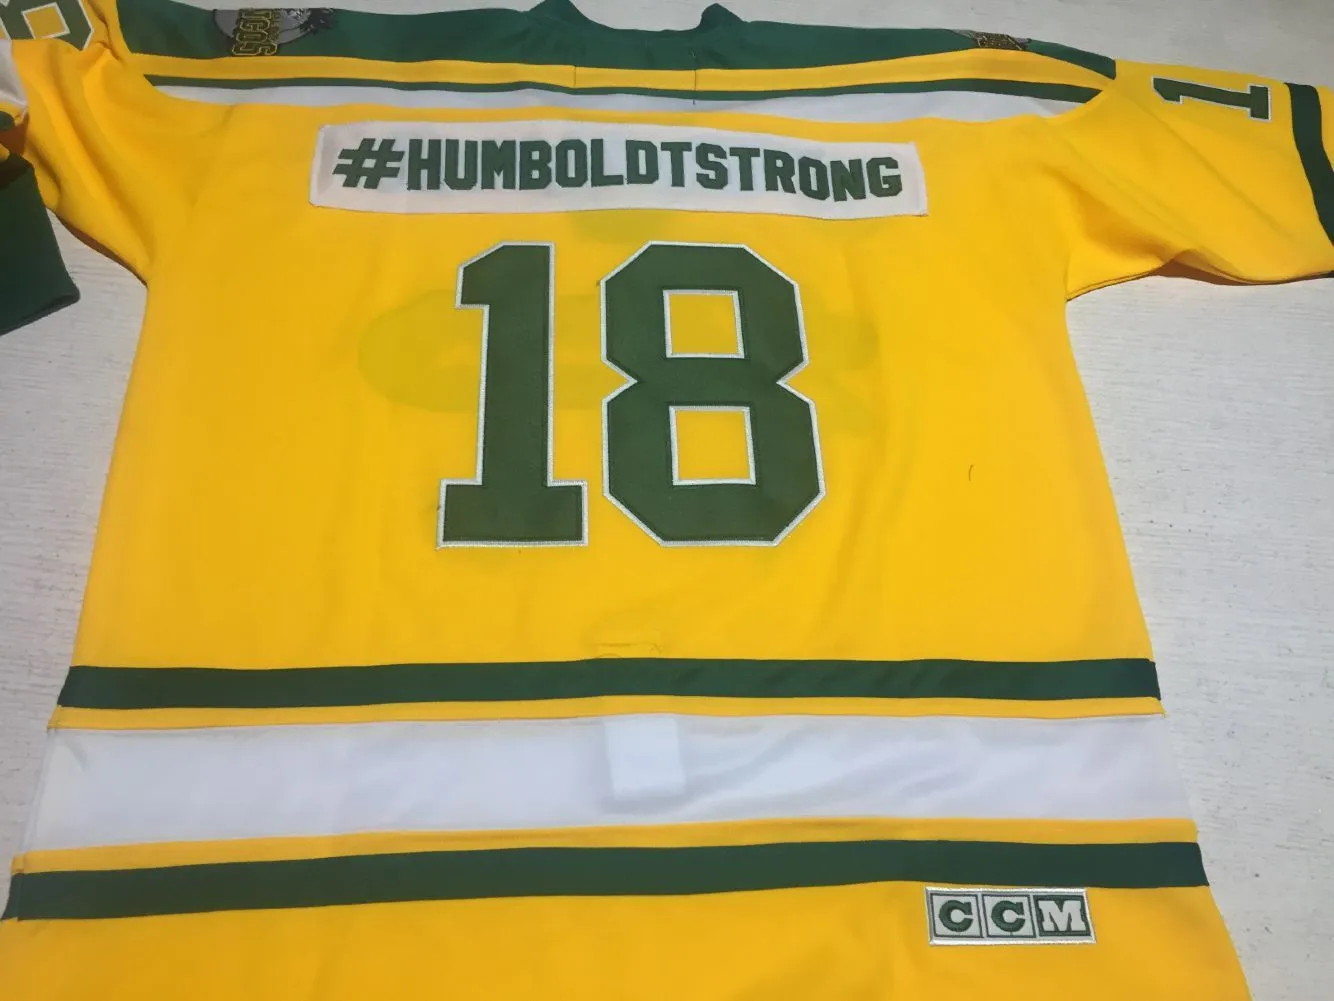 Personalizado CCM Humboldt Broncos # humboldtstrong 18 Hockey Jersey Vintage # 20 SCHATZ Ed Bordado Qualquer Nome Número S-5XL